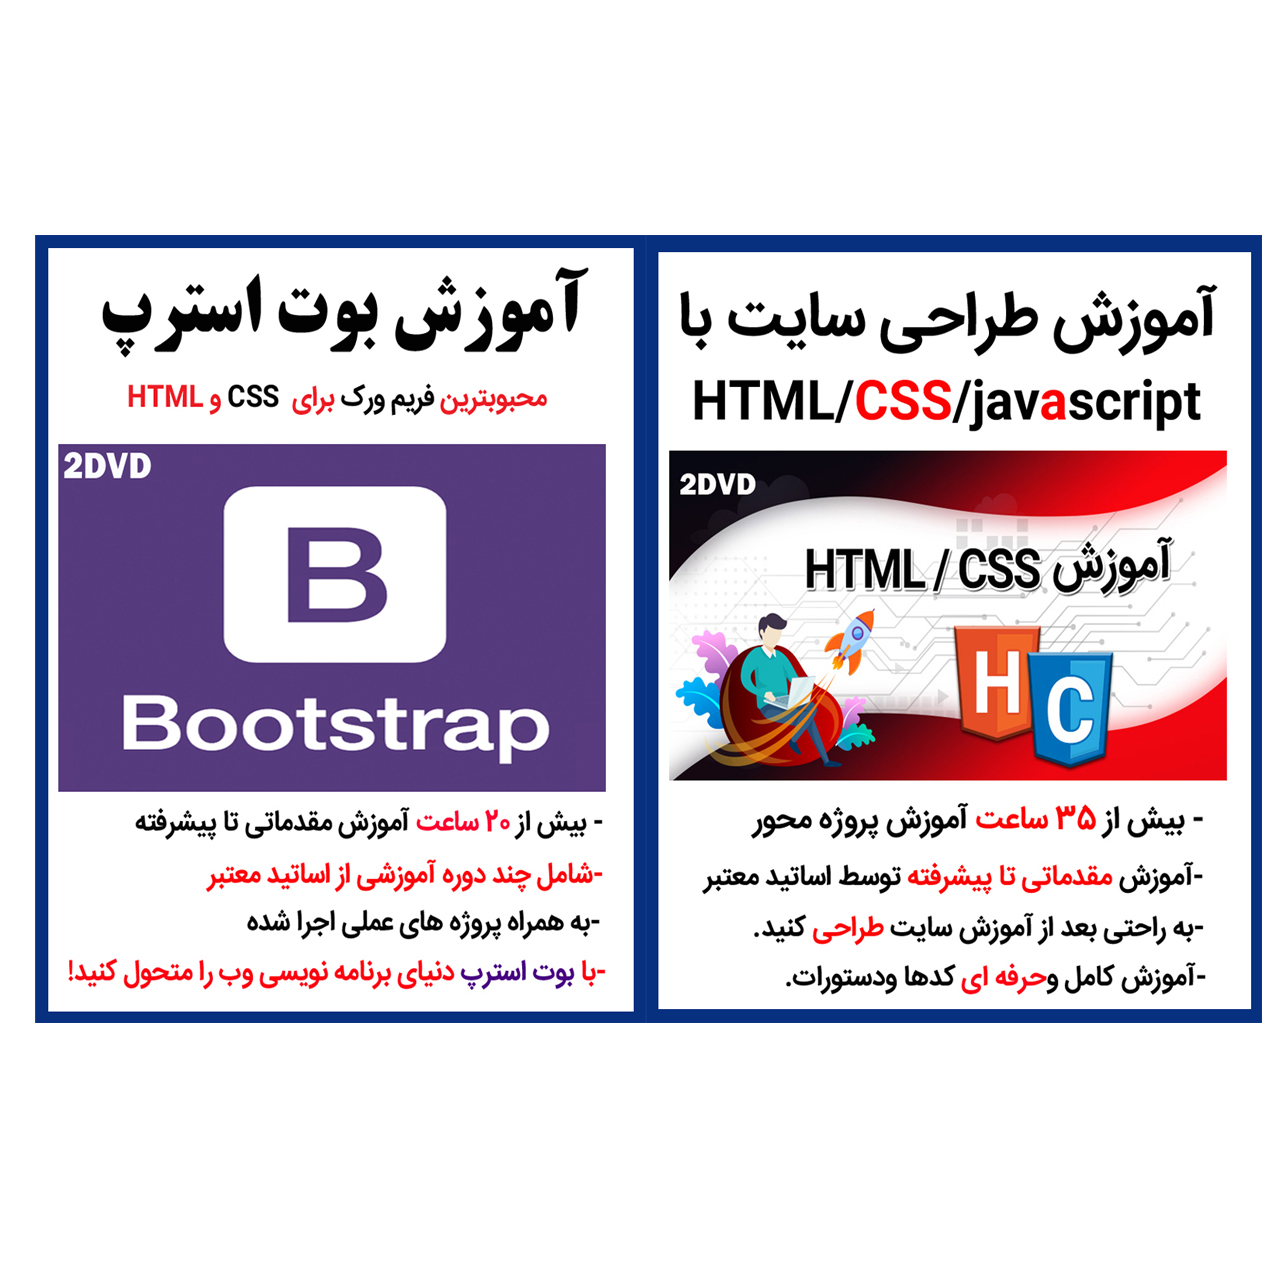 نرم افزار آموزش طراحی سایت با css,html,javascript نشر کاران به همراه نرم افزار آموزش بوت استرپ bootstrap نشر کاران